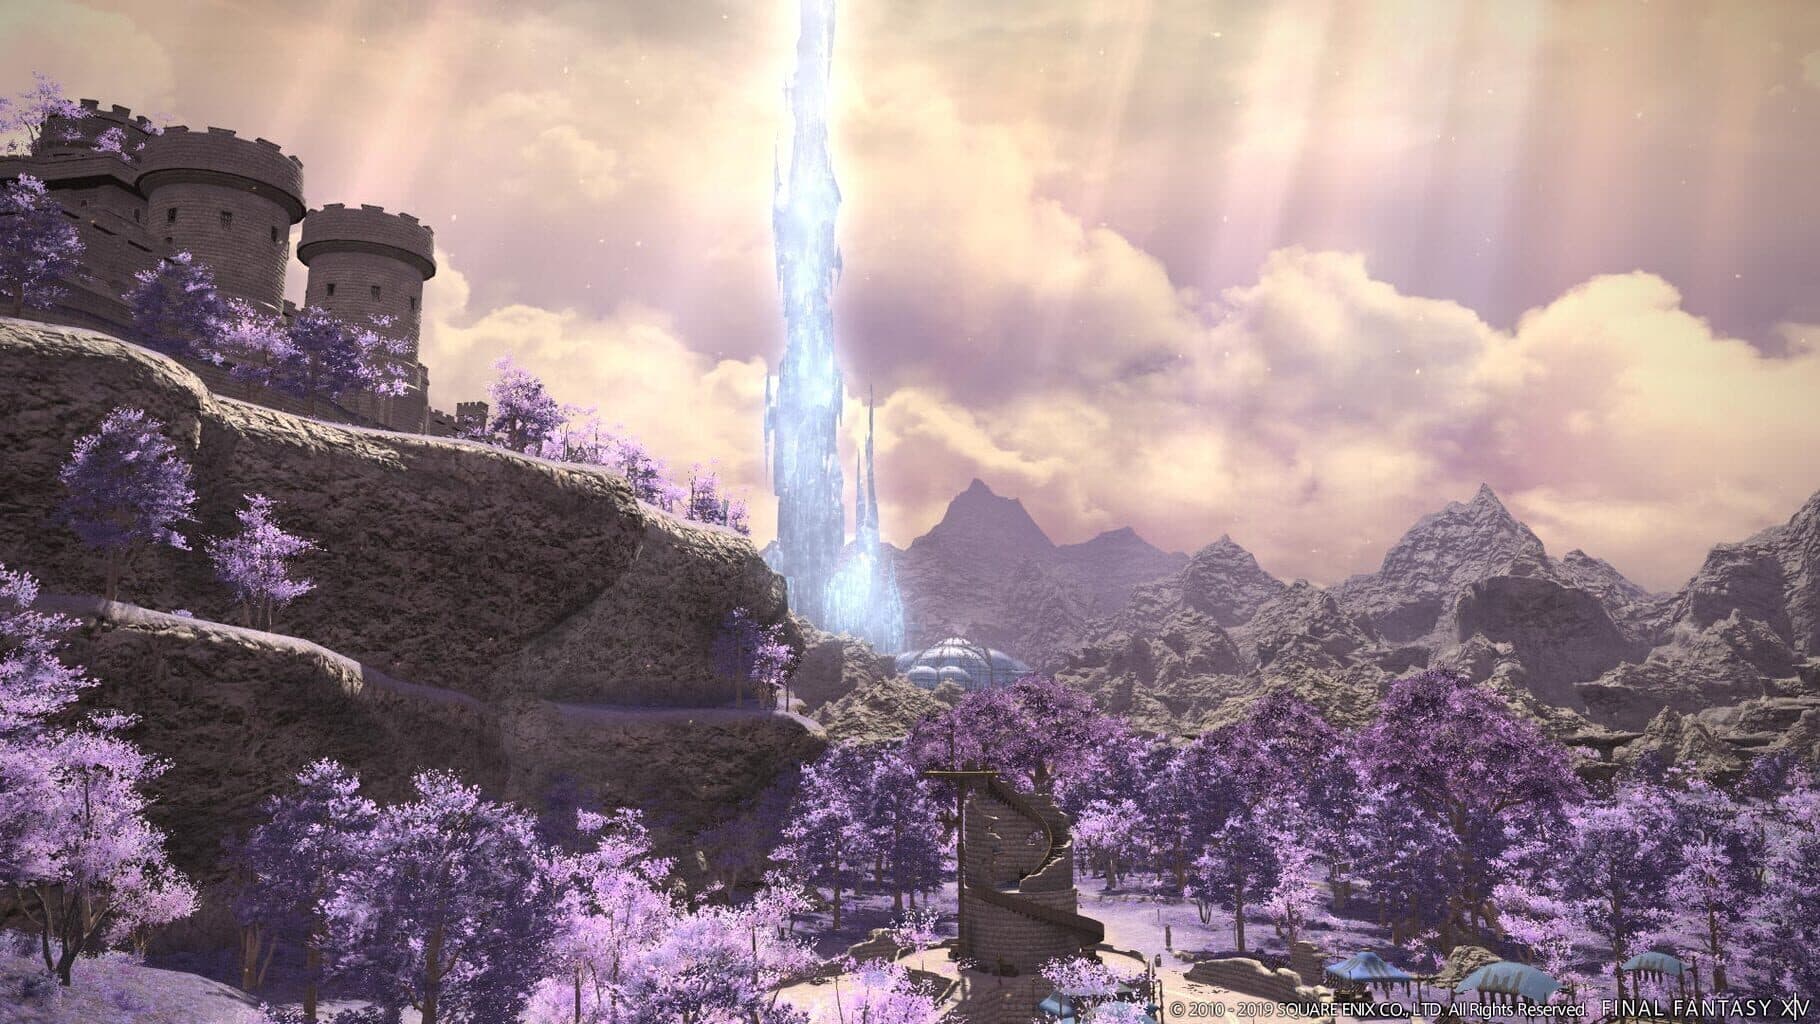 Final Fantasy XIV: Shadowbringers Image